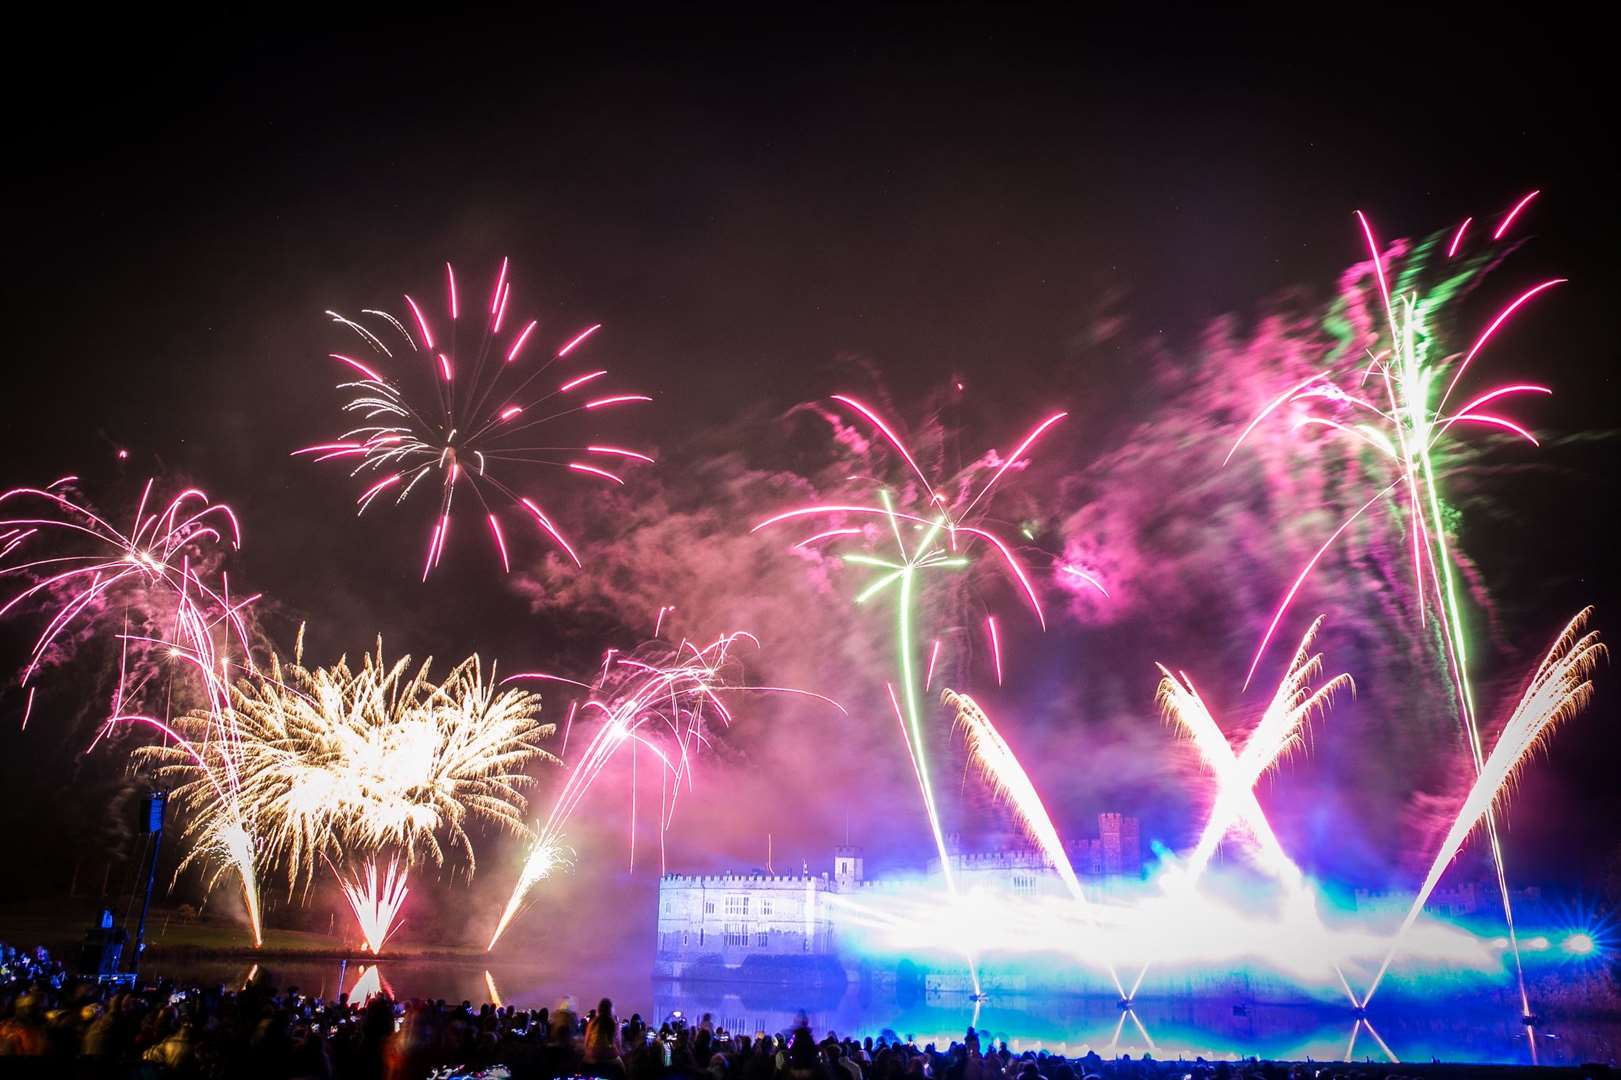 Leeds Castle Fireworks last year Picture: Matthew Walker